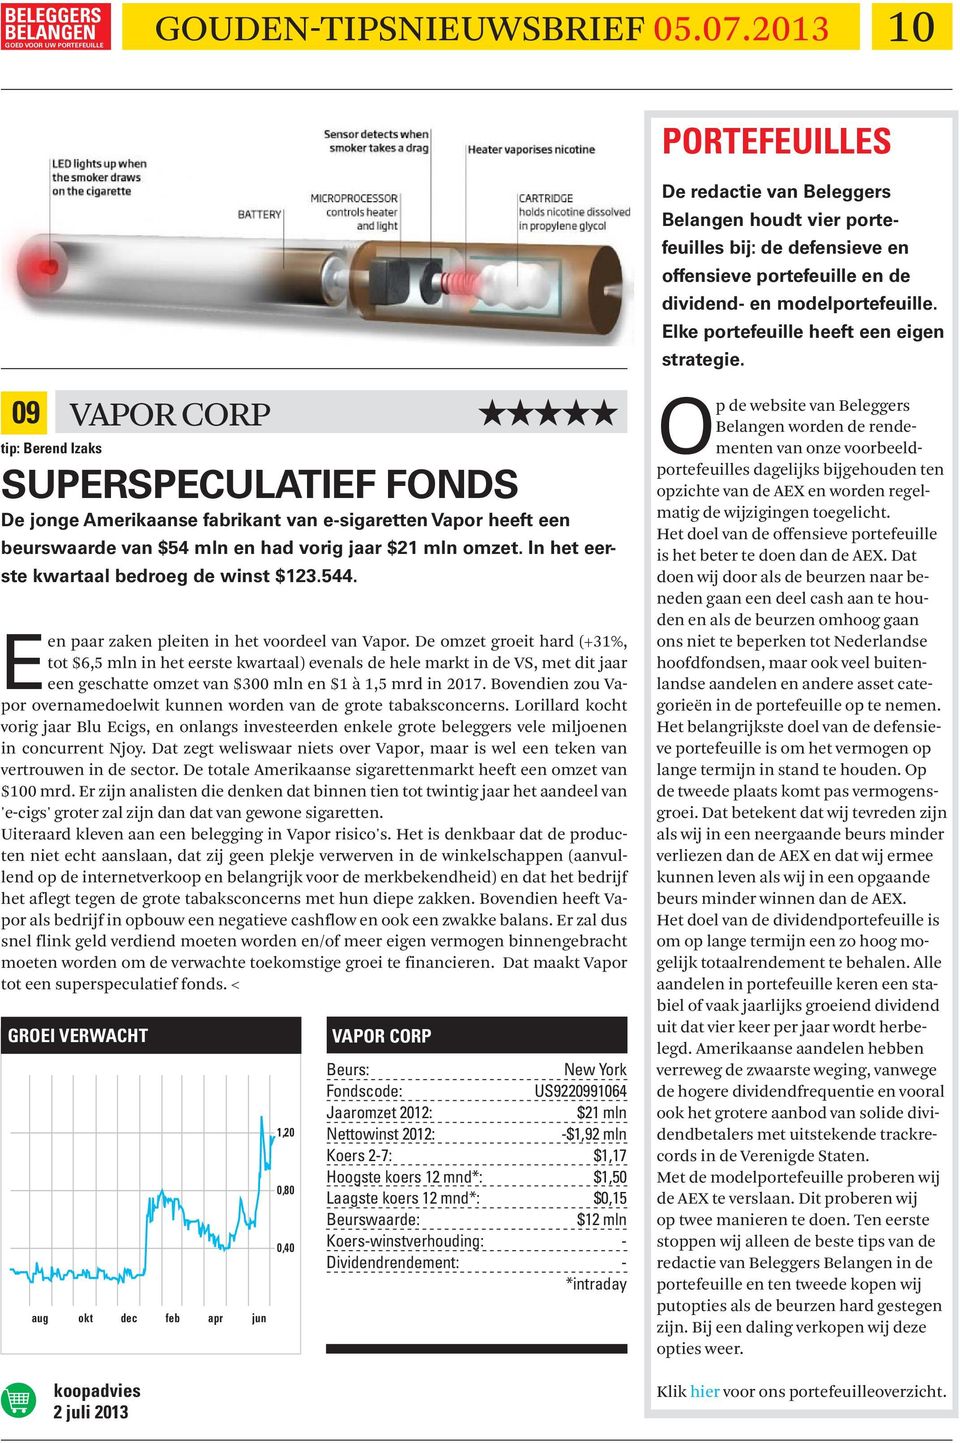 09 tip: Berend Izaks SUPERSPECULATIEF FONDS De jonge Amerikaanse fabrikant van e-sigaretten Vapor heeft een beurswaarde van $54 mln en had vorig jaar $21 mln omzet.